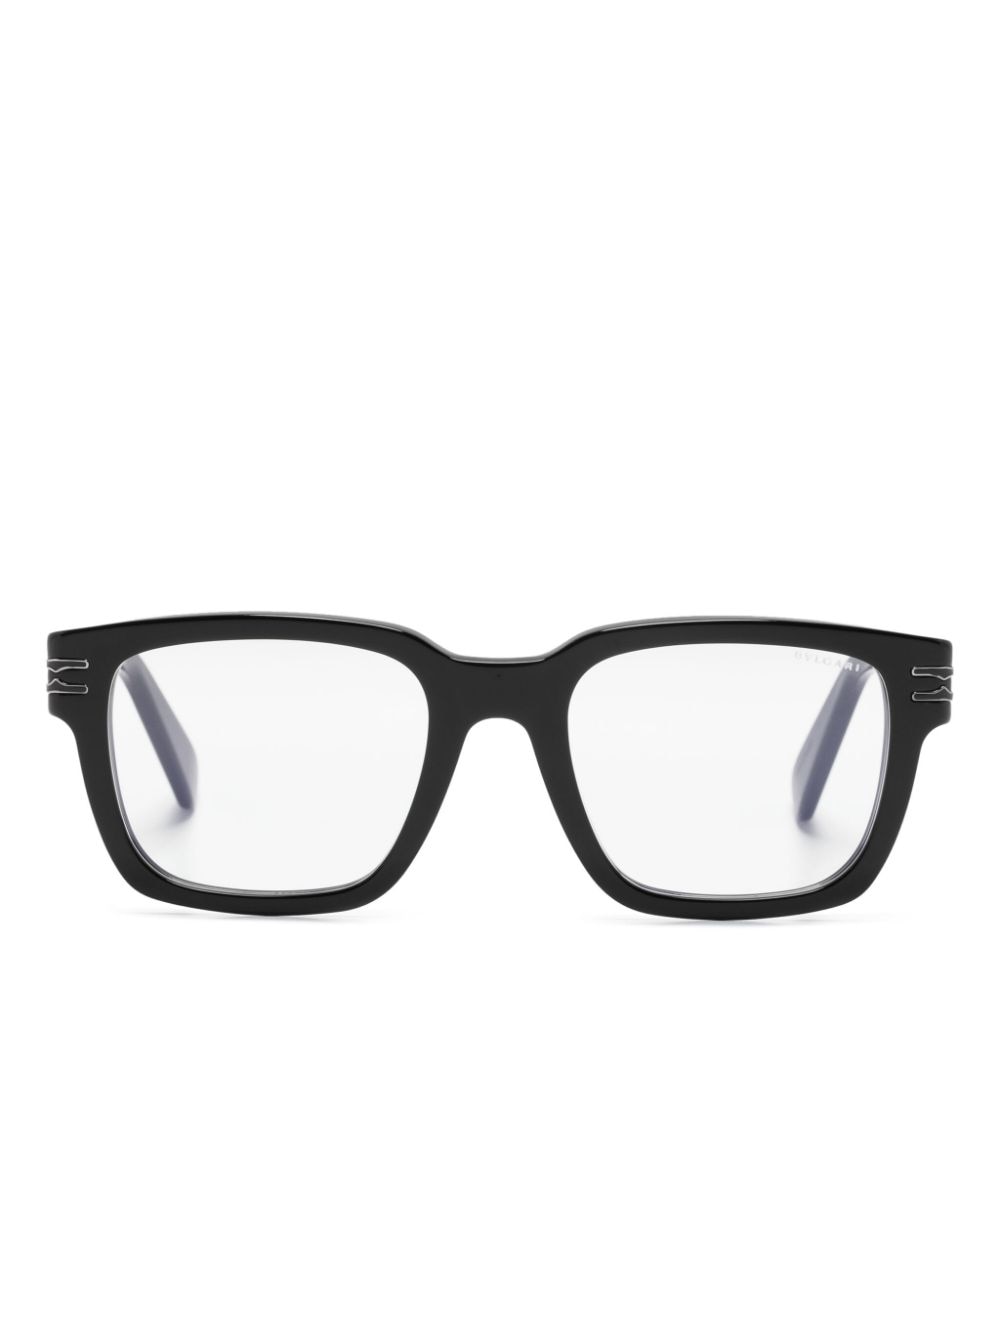 Bvlgari Bv50010i Square-frame Glasses In Black